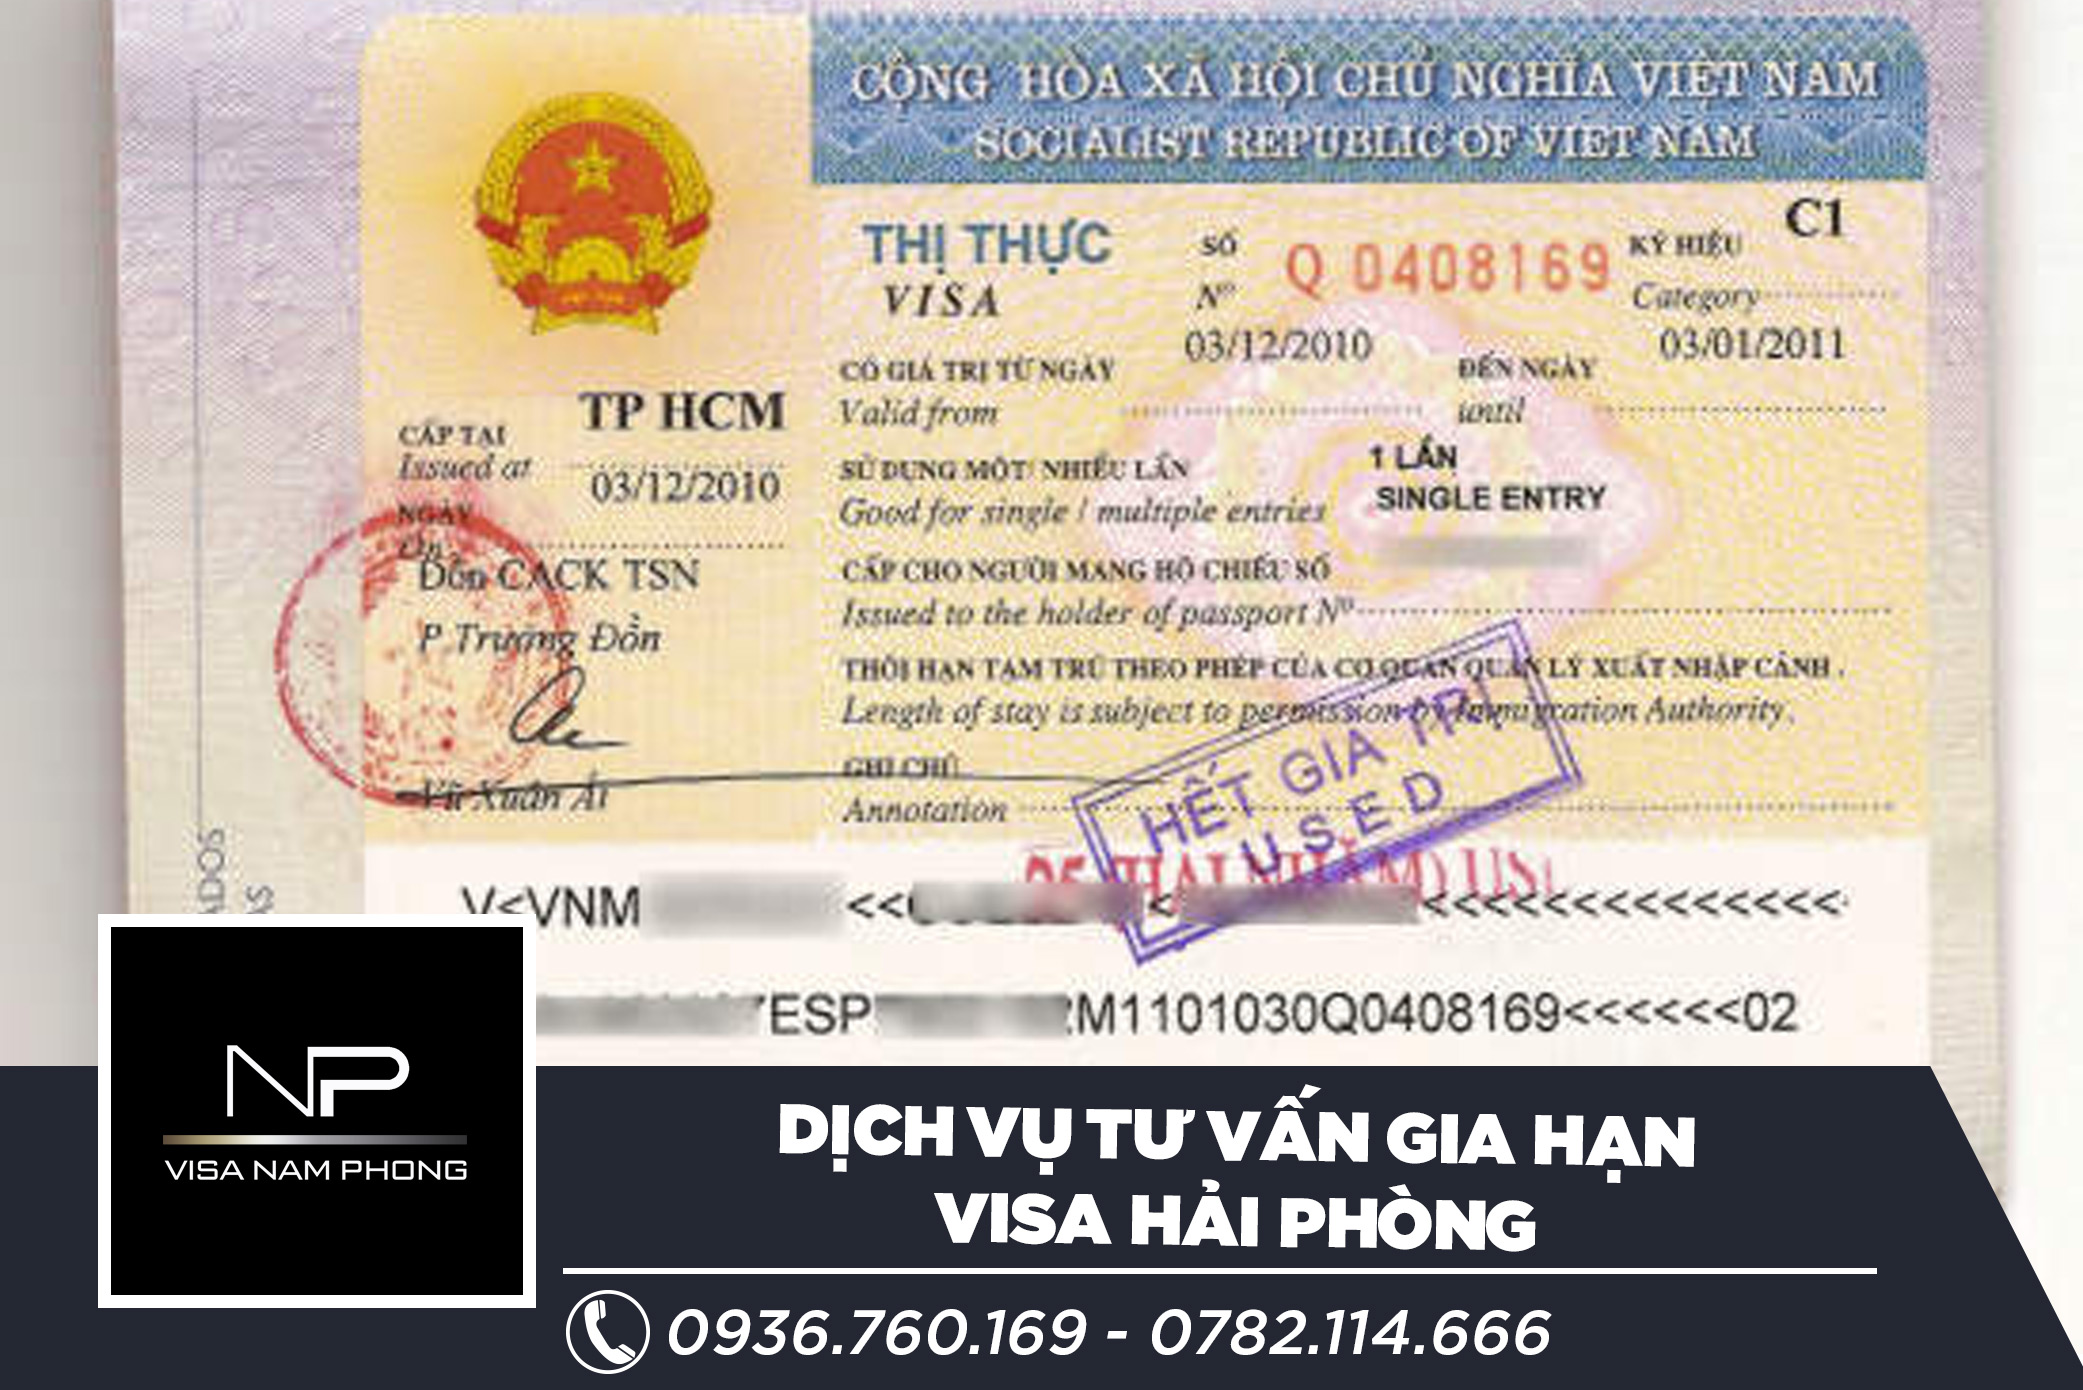 Dịch vụ tư vấn gia hạn visa uy tín ở hải phòng